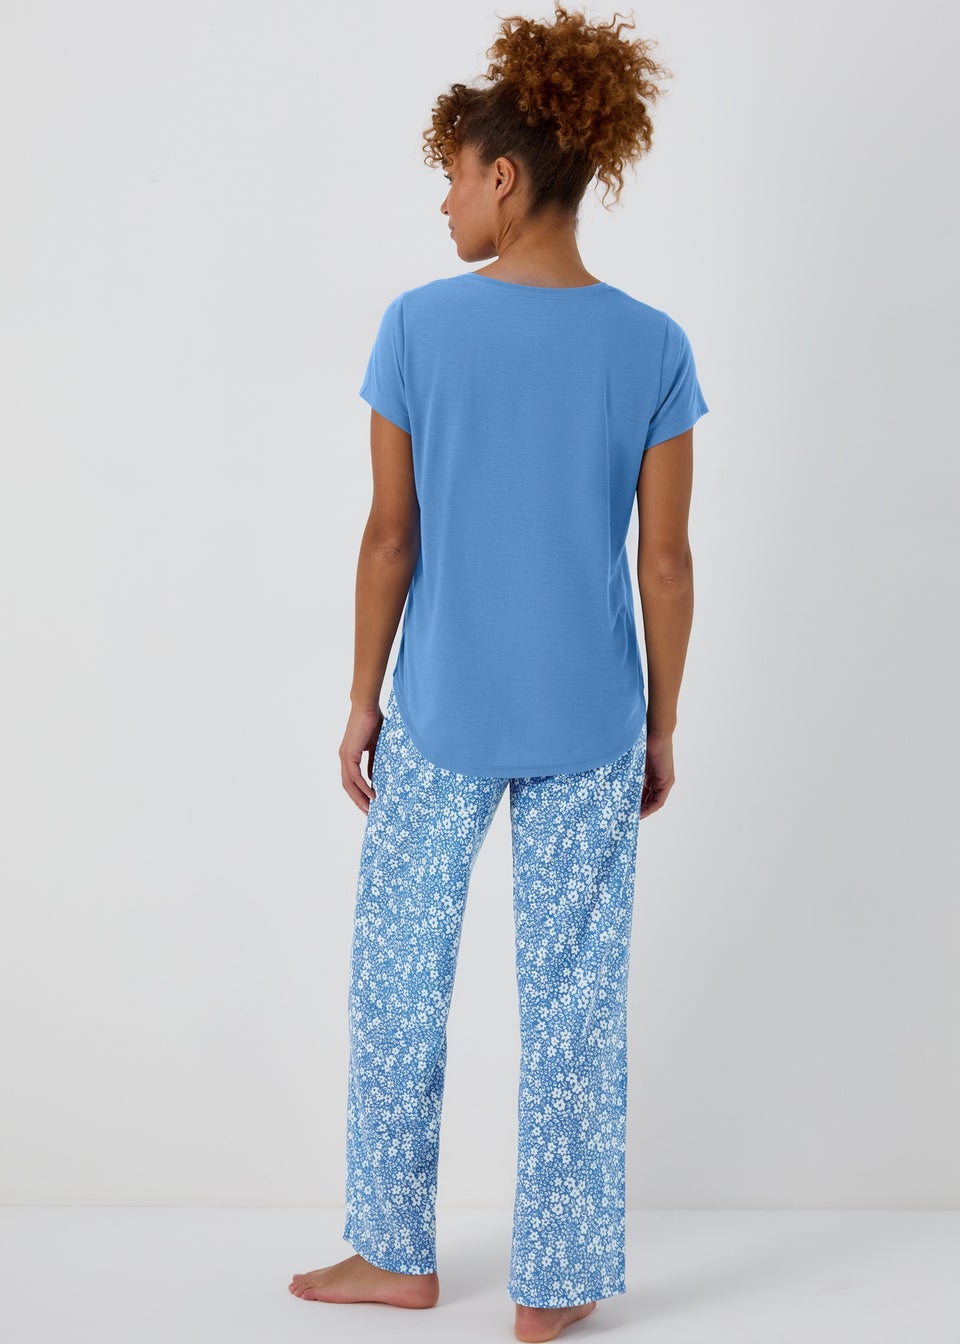 Blue Floral Print Pyjamas